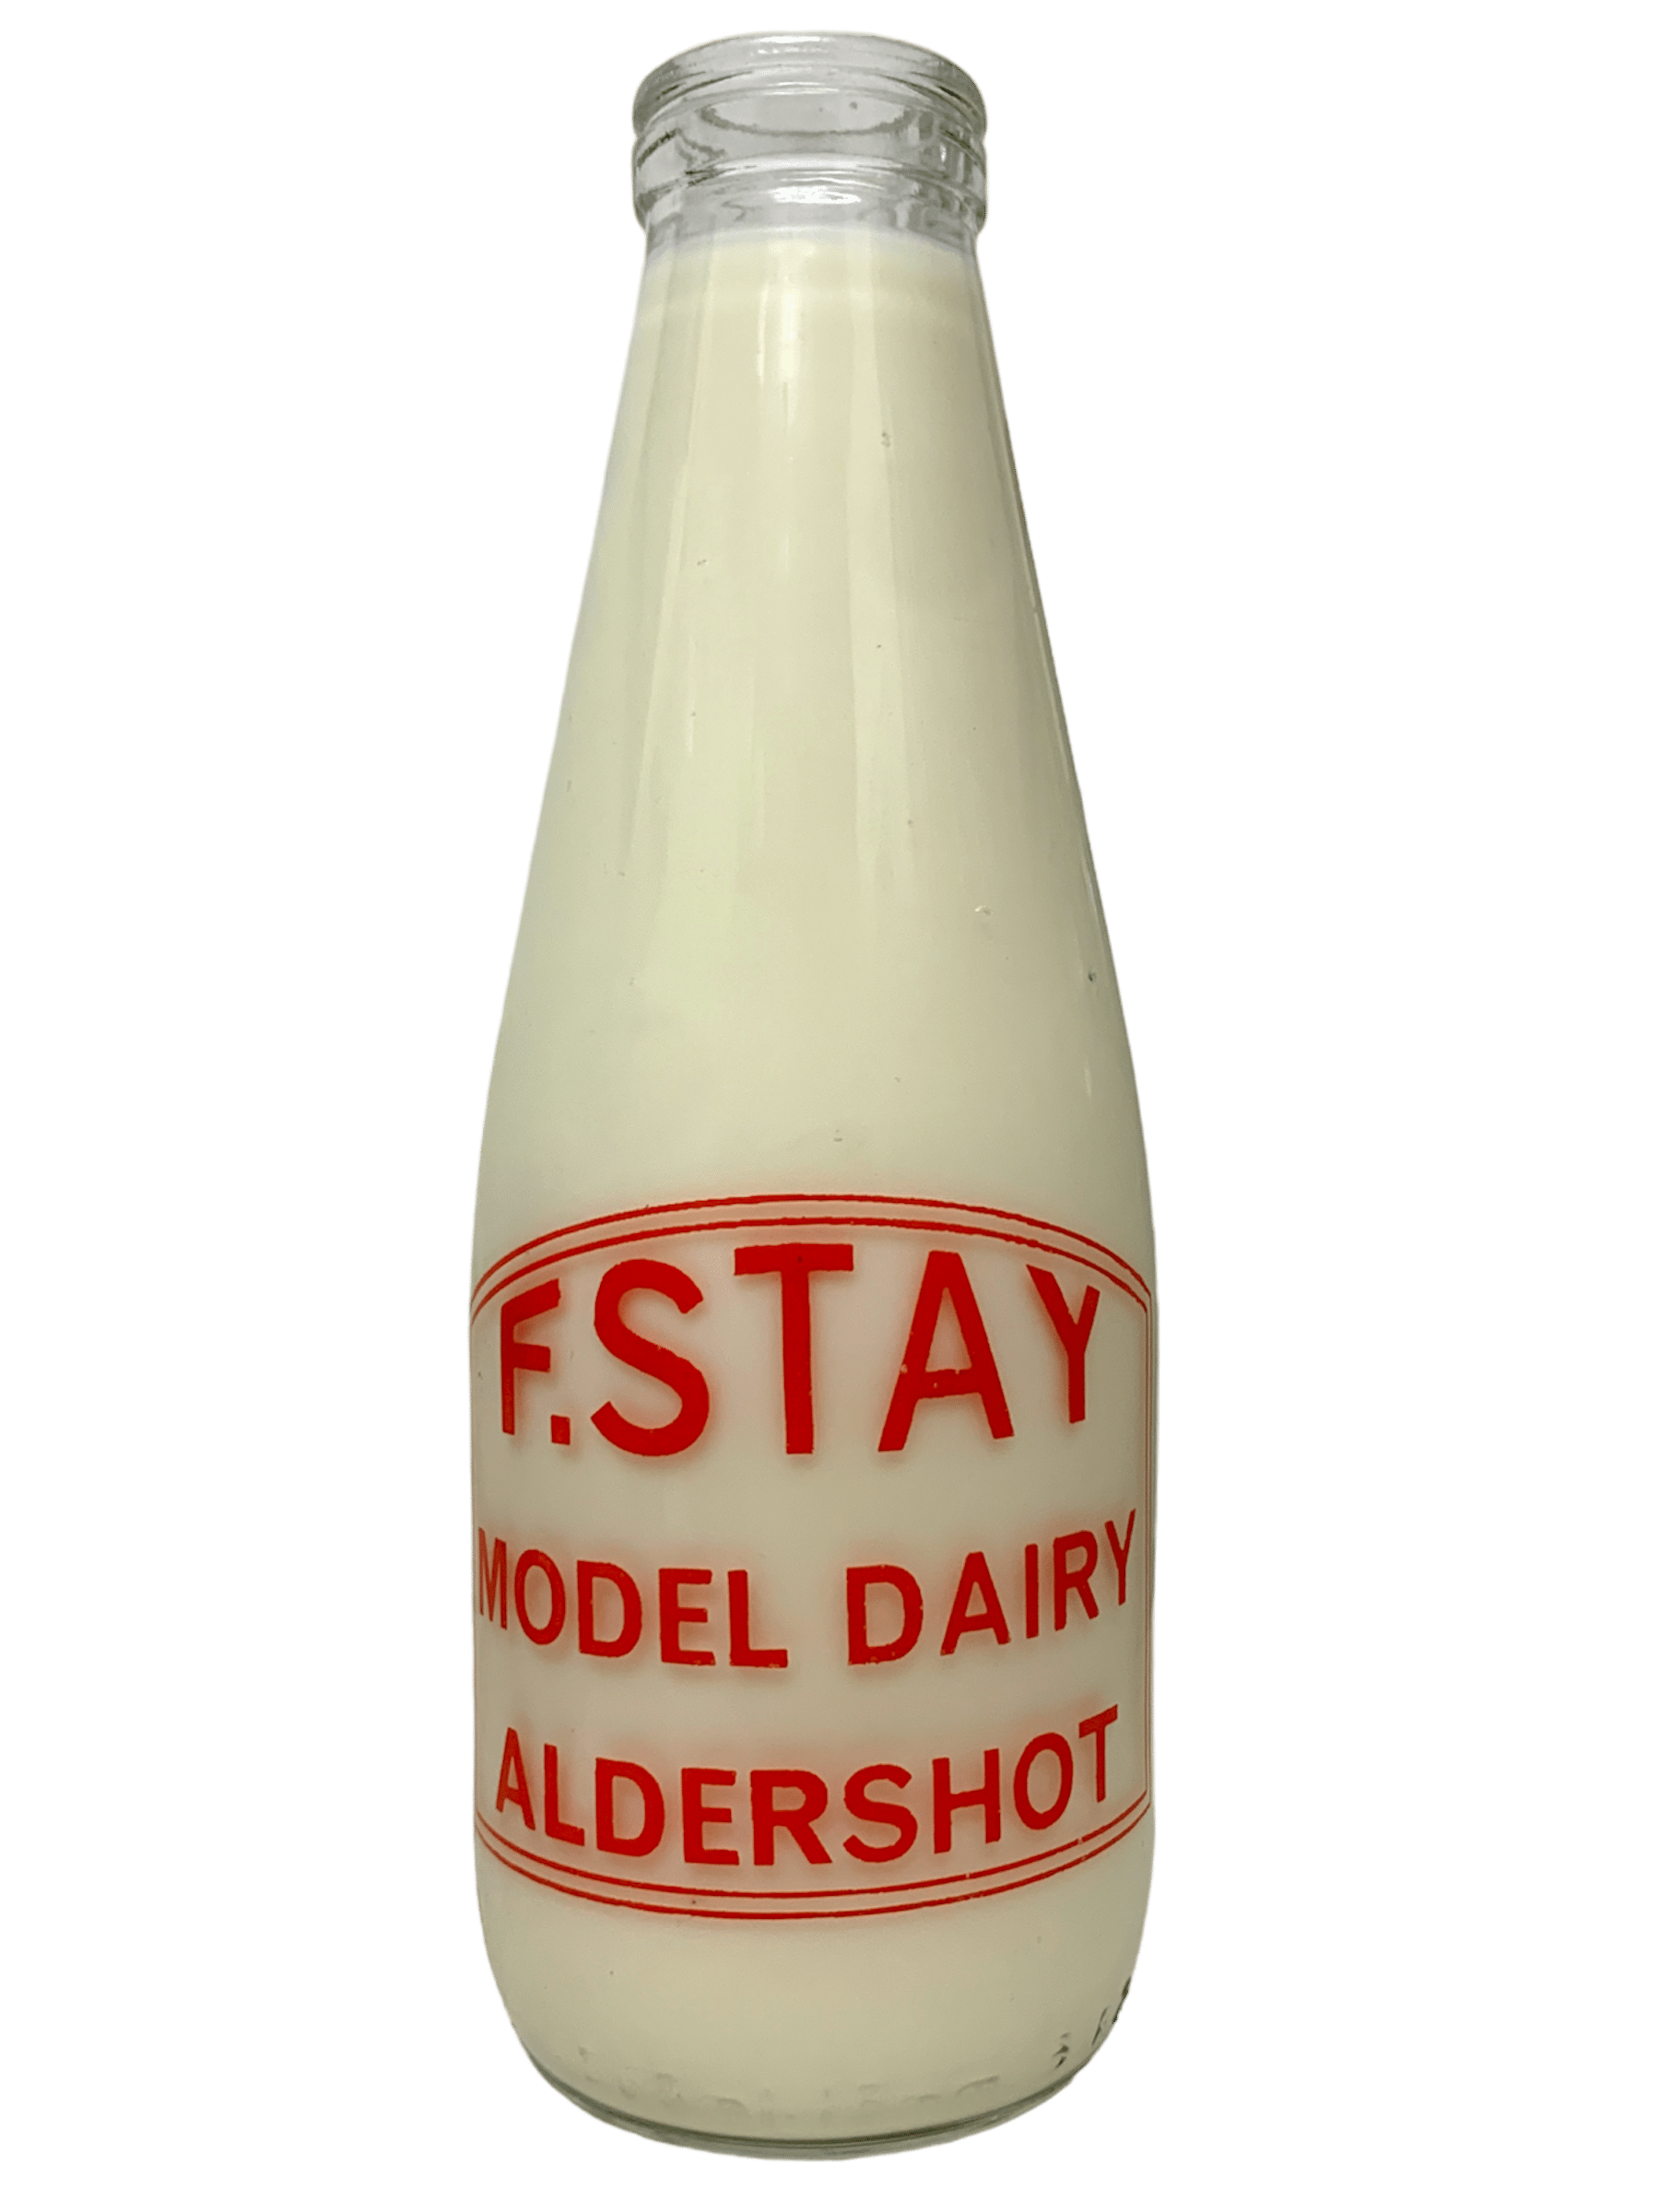 F Stay Model Dairy - www.Kelis.info #KelisTheBottleBank